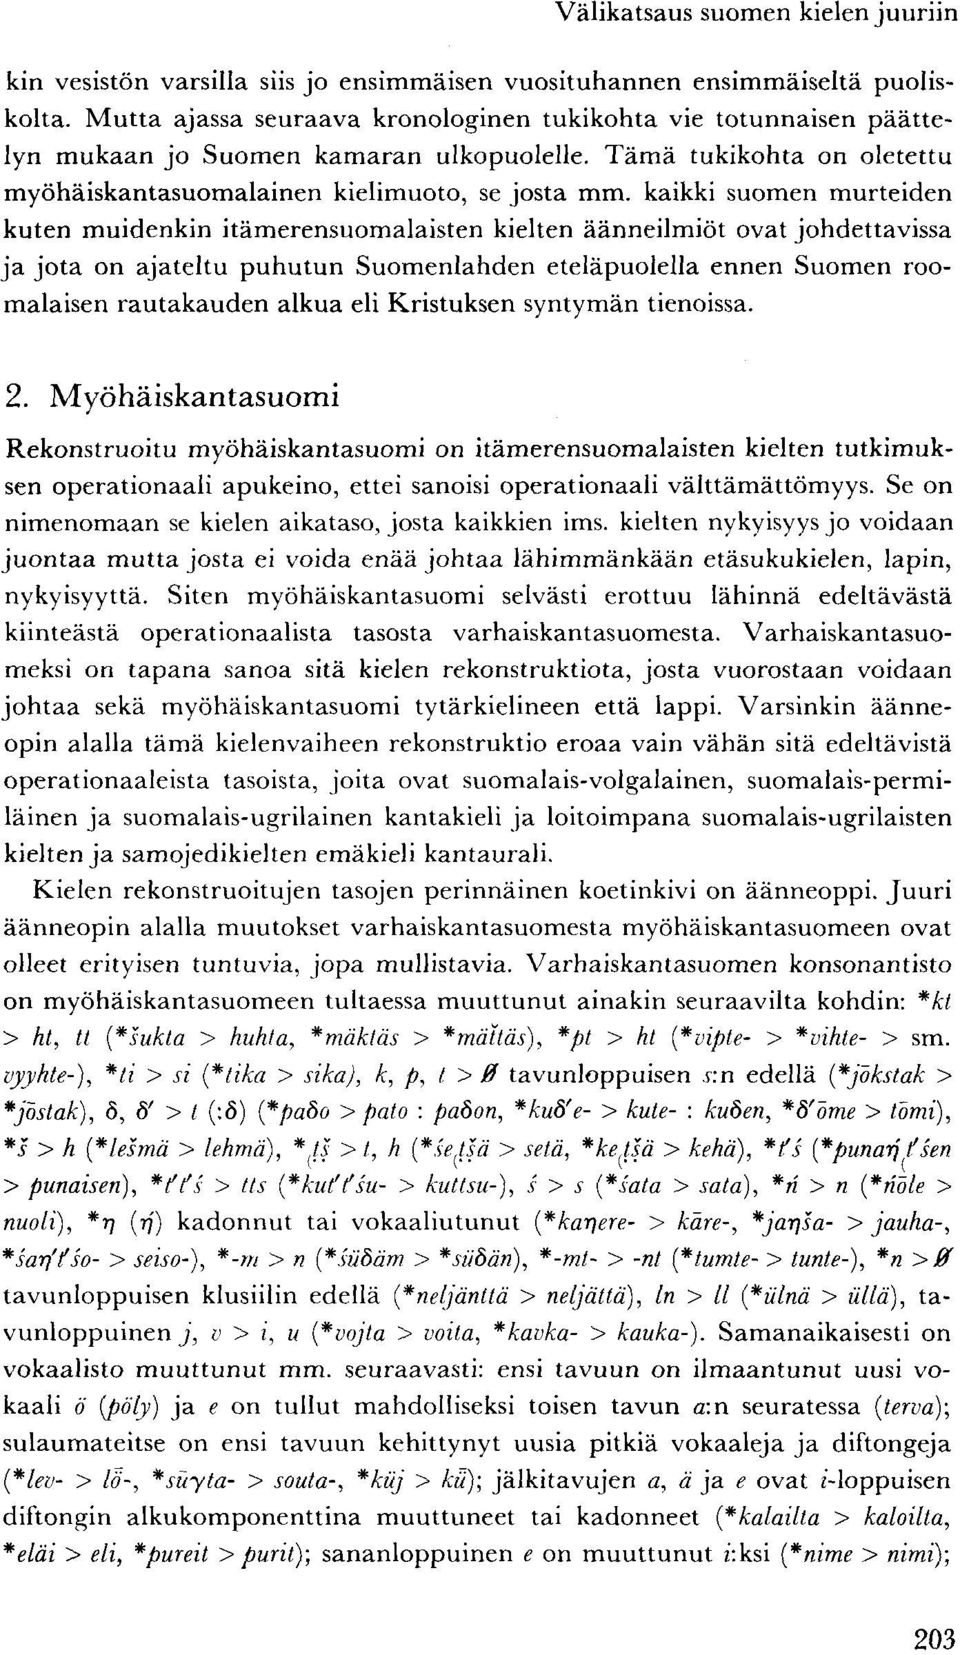 kaikki suomen murteiden kuten muidenkin itämerensuomalaisten kielten äänneilmiöt ovat johdettavissa ja jota on ajateltu puhutun Suomenlahden eteläpuolella ennen Suomen roomalaisen rautakauden alkua